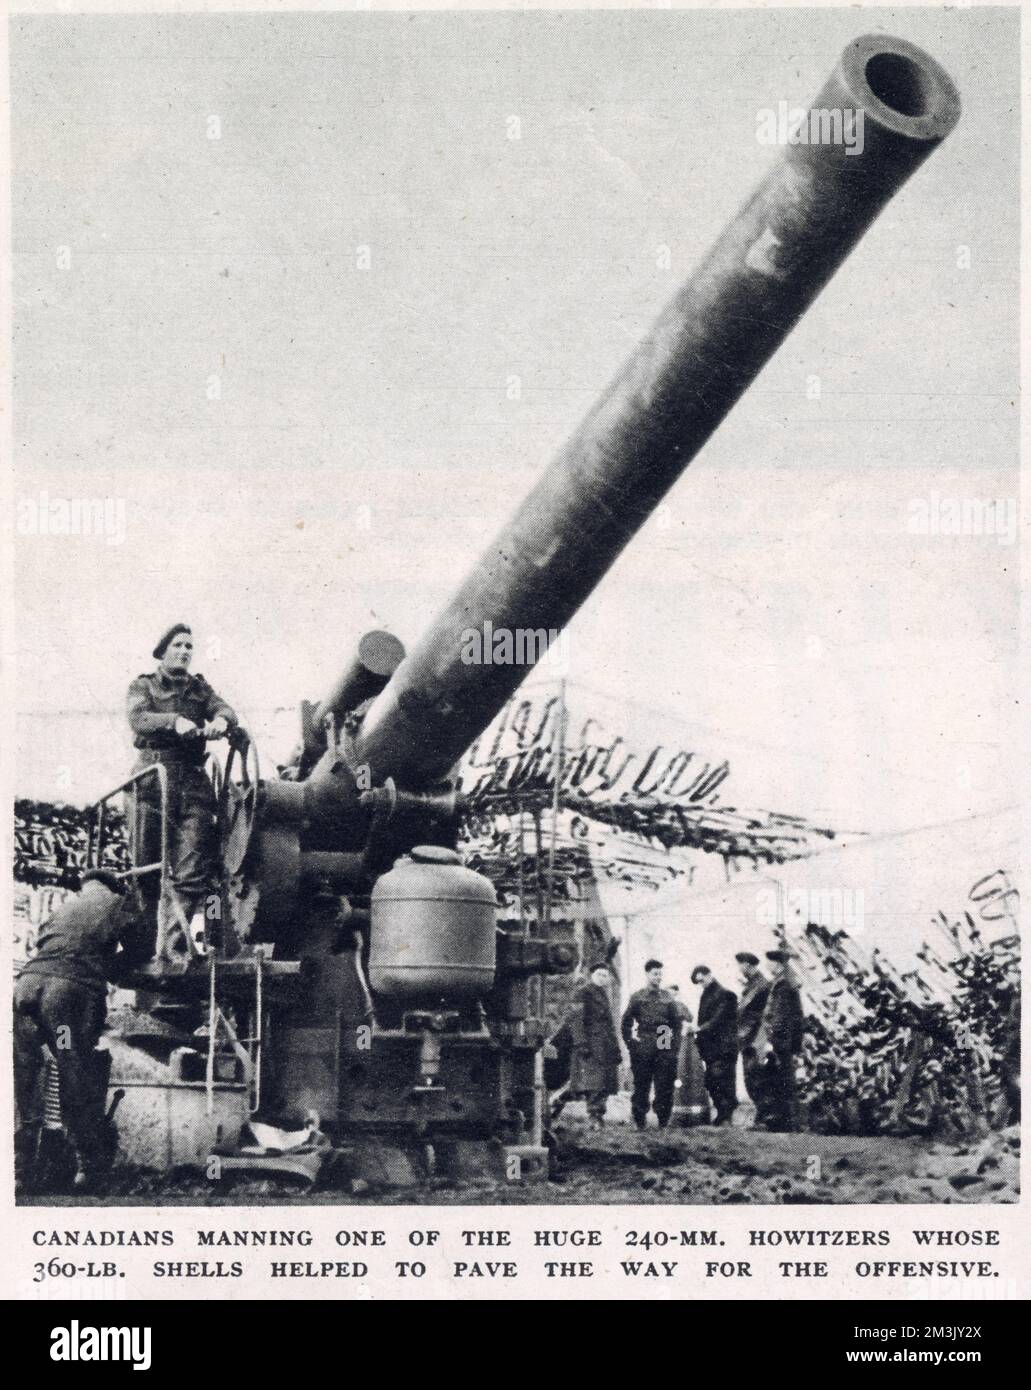 Un'unità di truppe canadesi che presiedano un howitzer 240mm, vicino alla zona del Reichswald, Germania, febbraio 1945. Questa pesante pistola di artiglieria sparava 360 chili a sostegno di un'offensiva britannica e canadese, contro le forze naziste nel Reichswald. Foto Stock